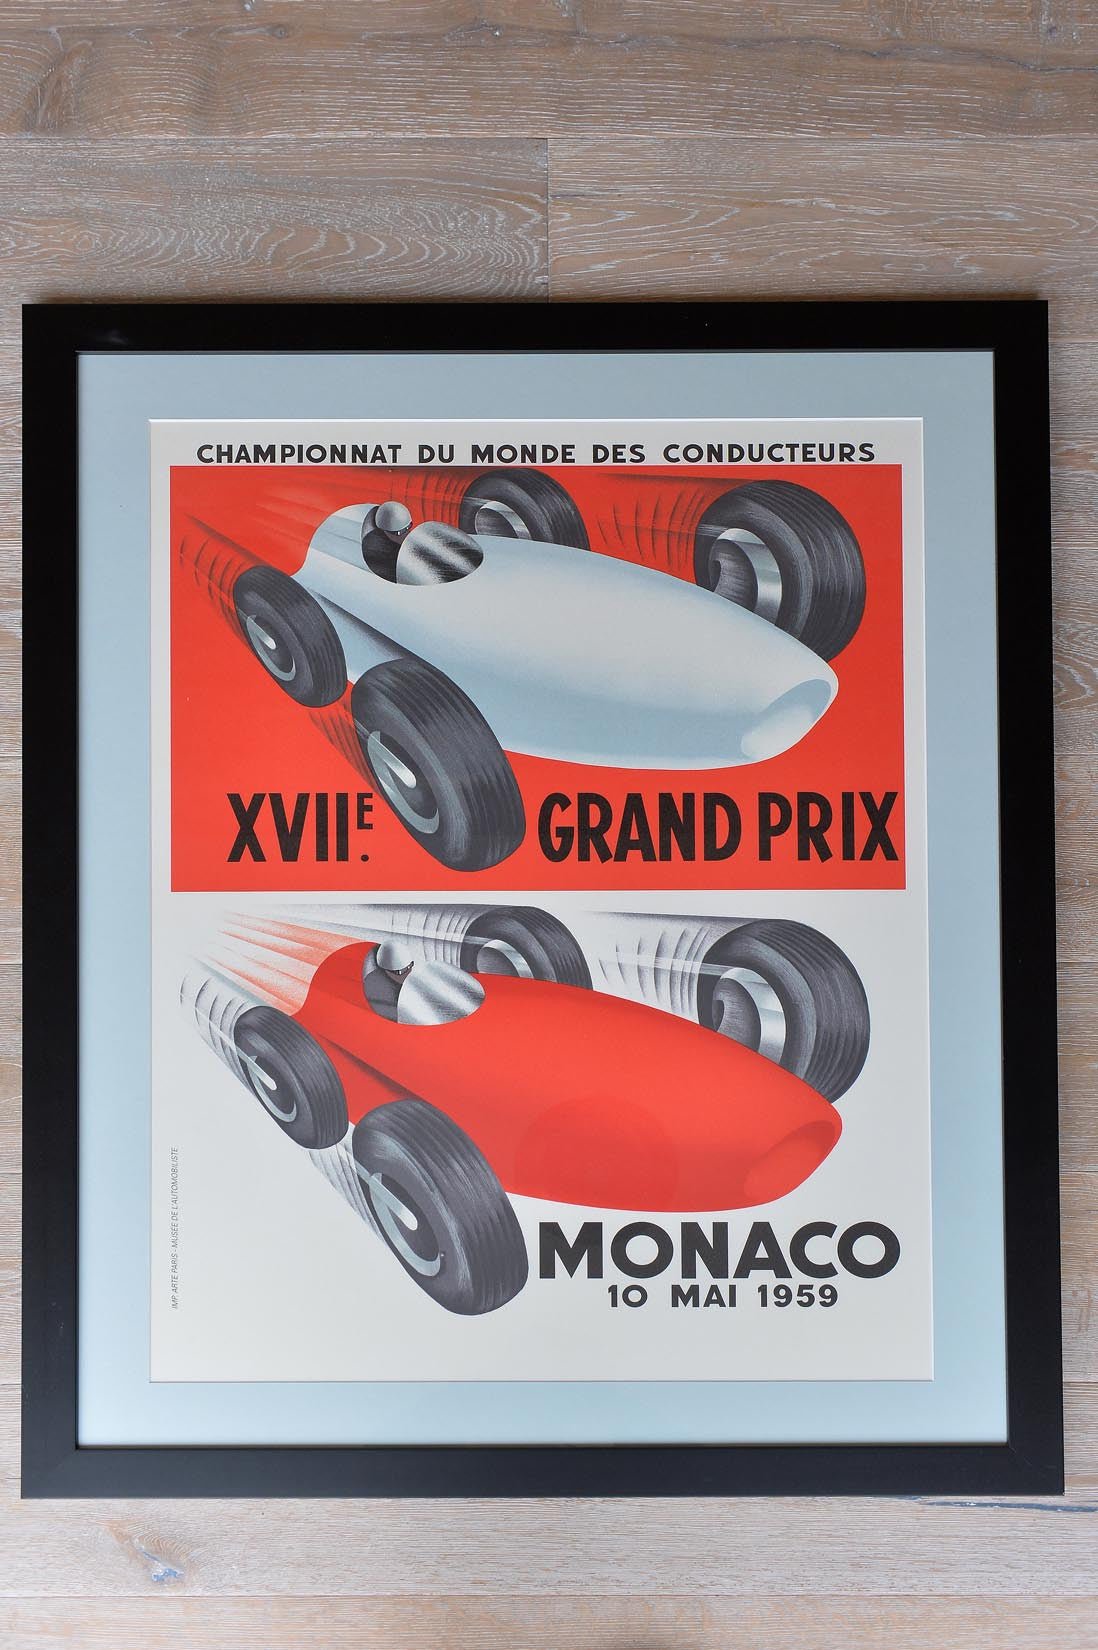 Monaco Grand Prix poster-10 Mai 1959 - Natalia Willmott